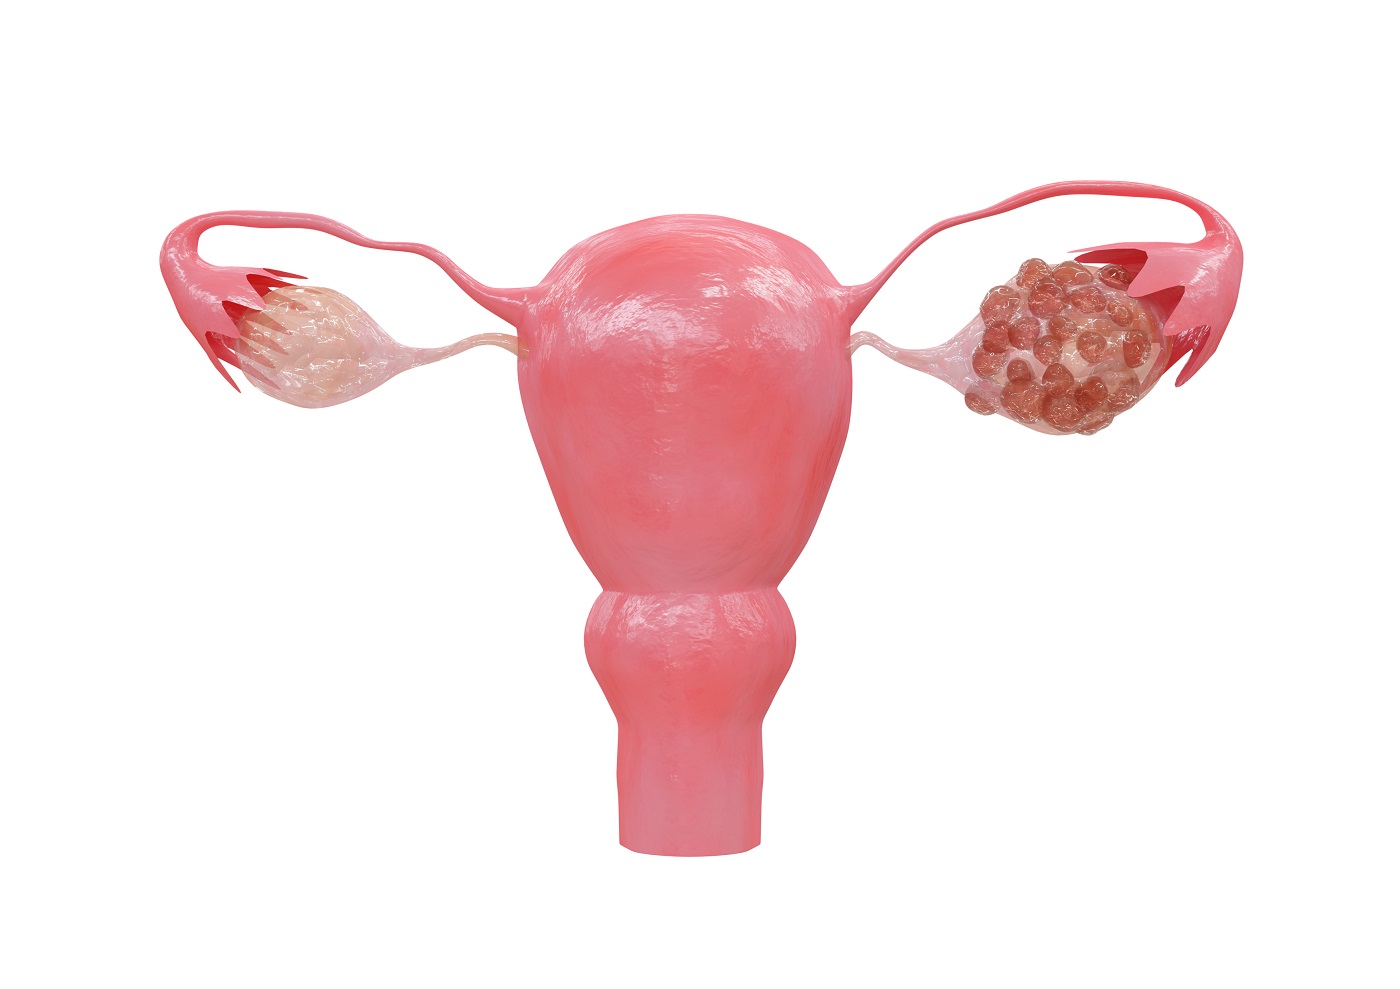 Eierstockzysten (Ovarialzysten): Ursachen, Symptome und Behandlung